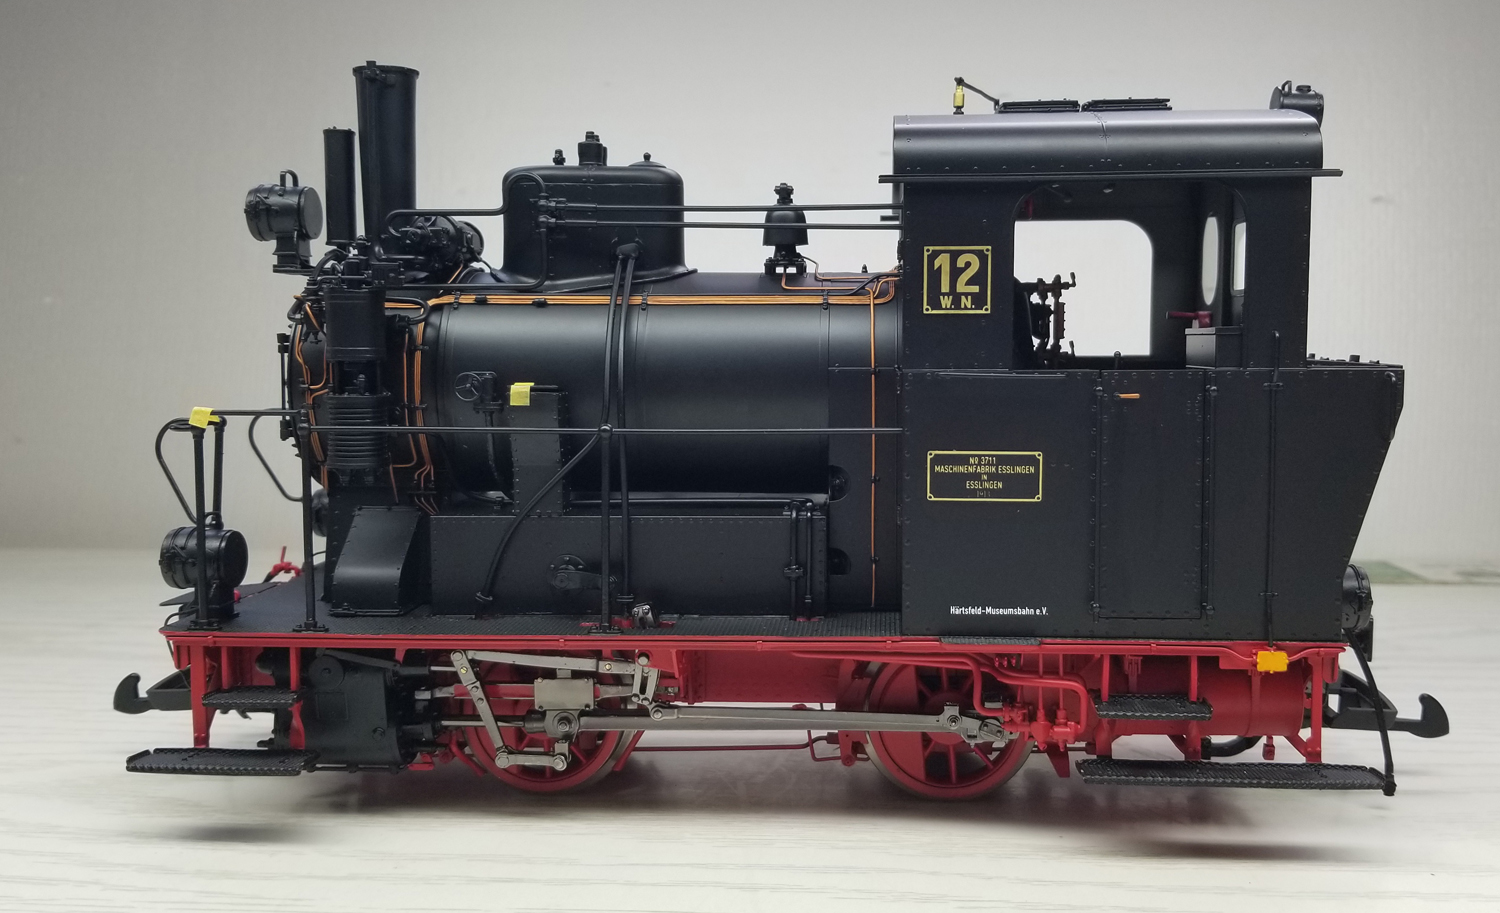 KM1 Modell der Schmalspurdampflokomotive K12 der Hrtsfeldbahn